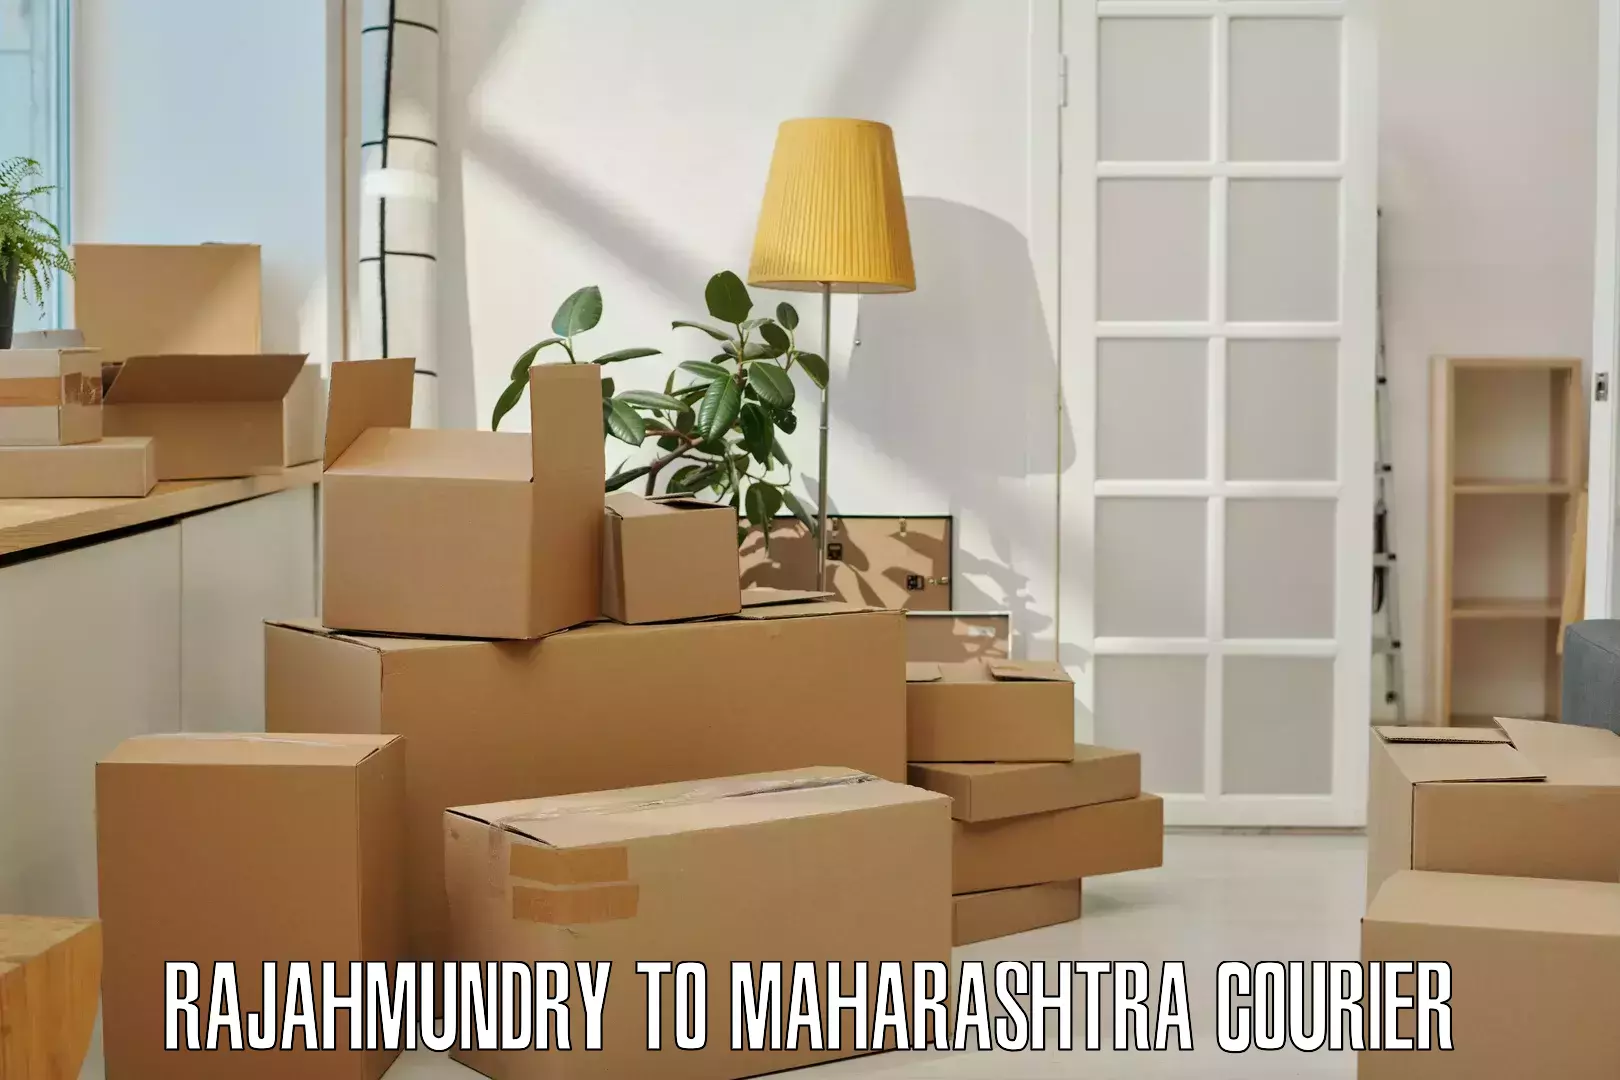 Affordable parcel service Rajahmundry to Vita